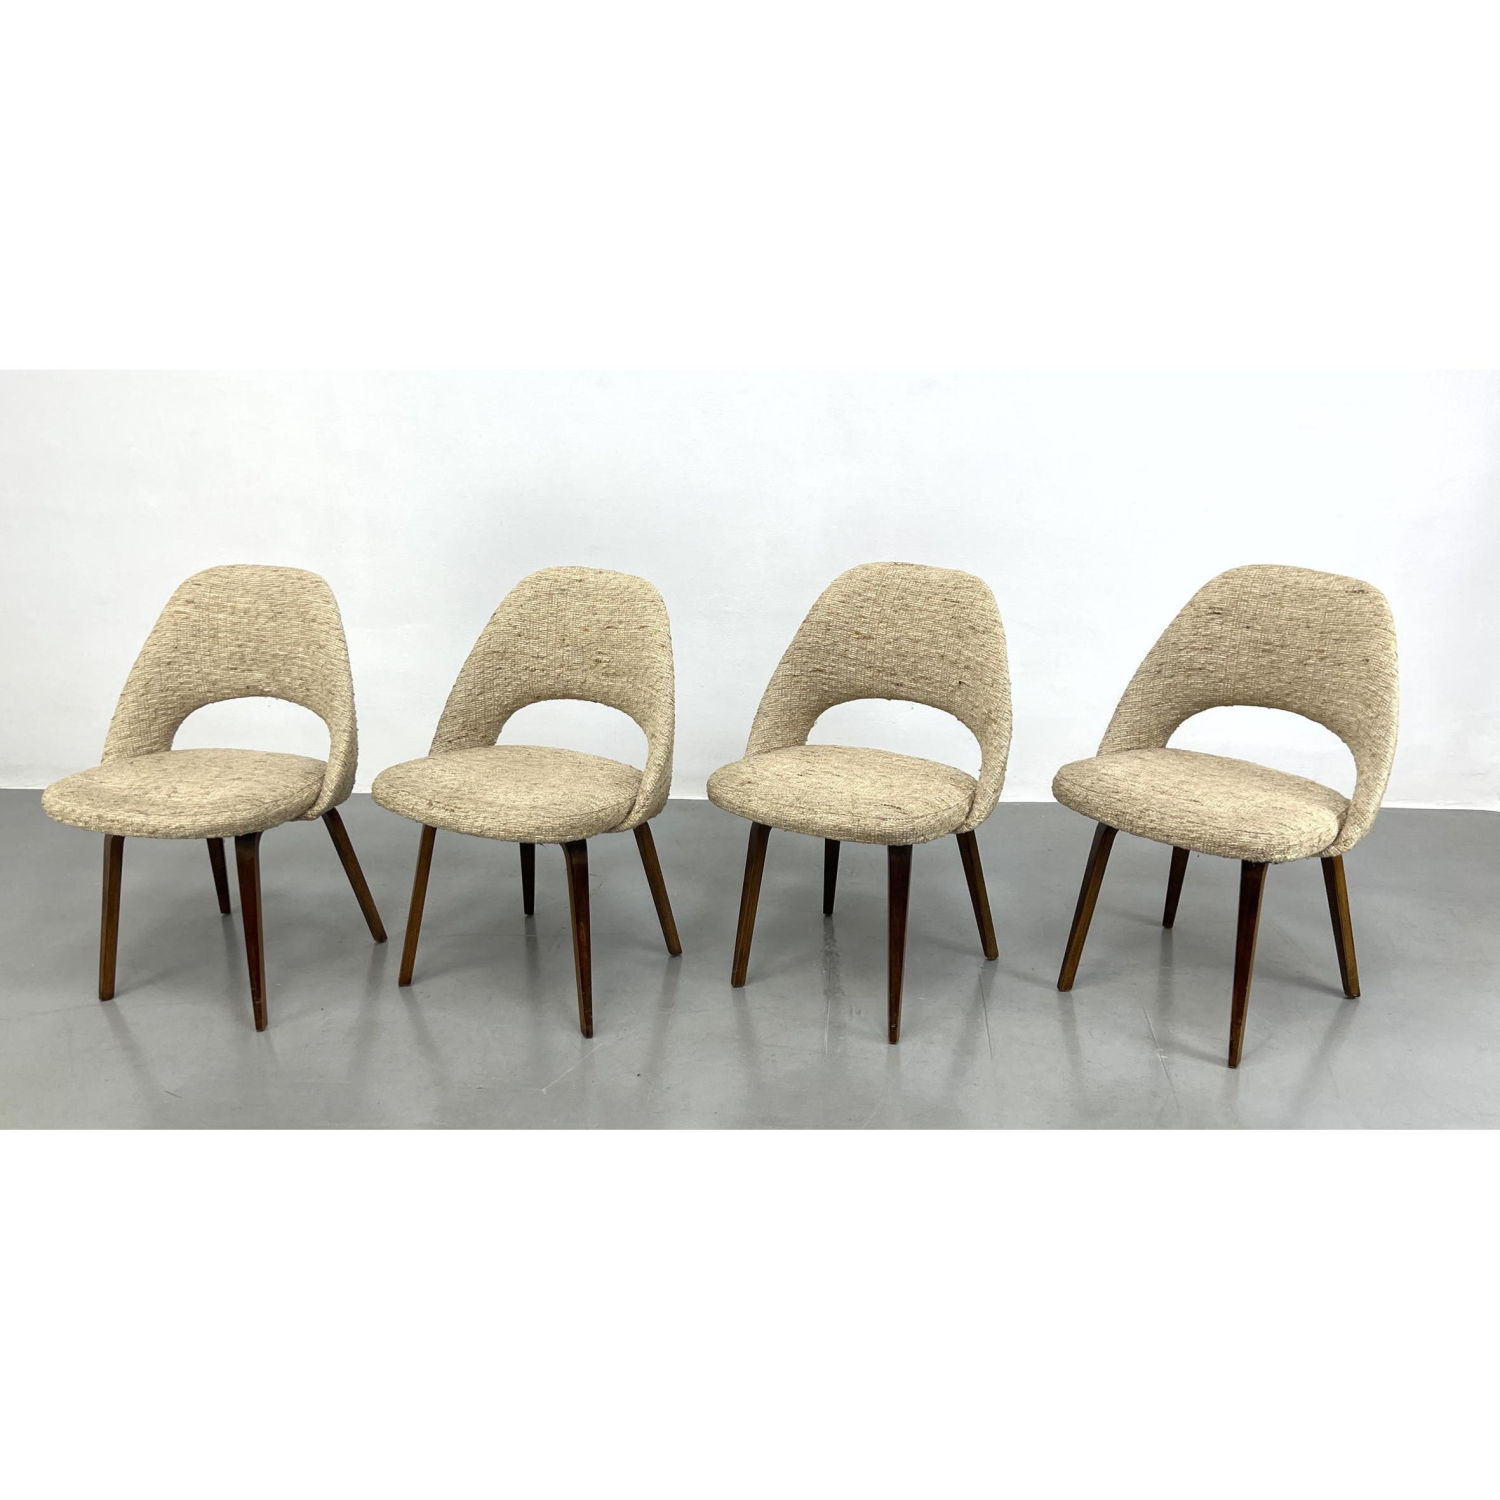 Set 4 Eero Saarinen Dining Chairs  2b9aca